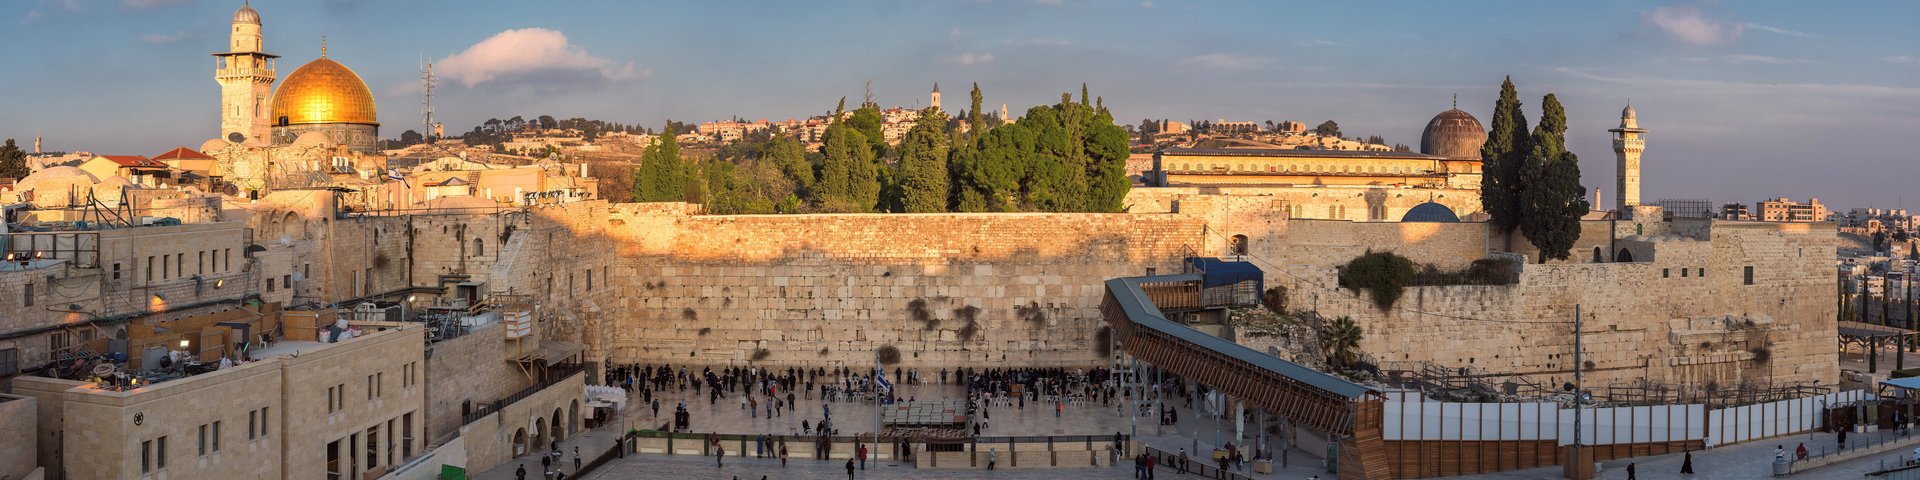 Blick vom Tempelberg auf die Altstadt von Jerusalem mit Klagemauer und Felsendom